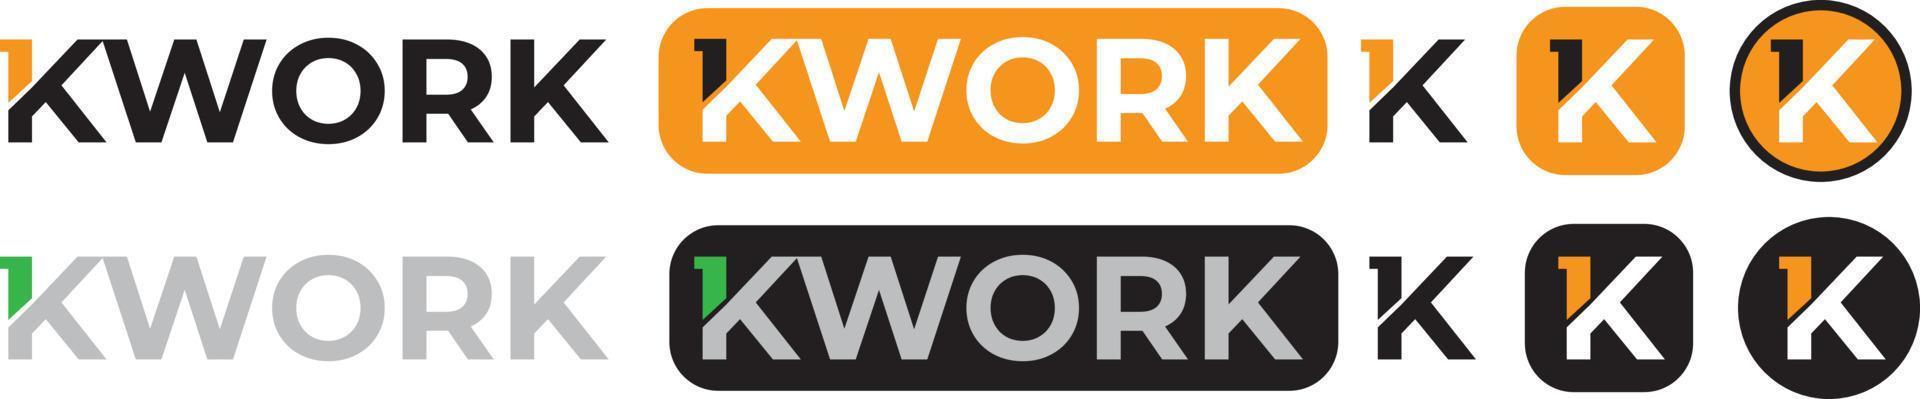 logotipo de la plataforma kwork para autónomos vector